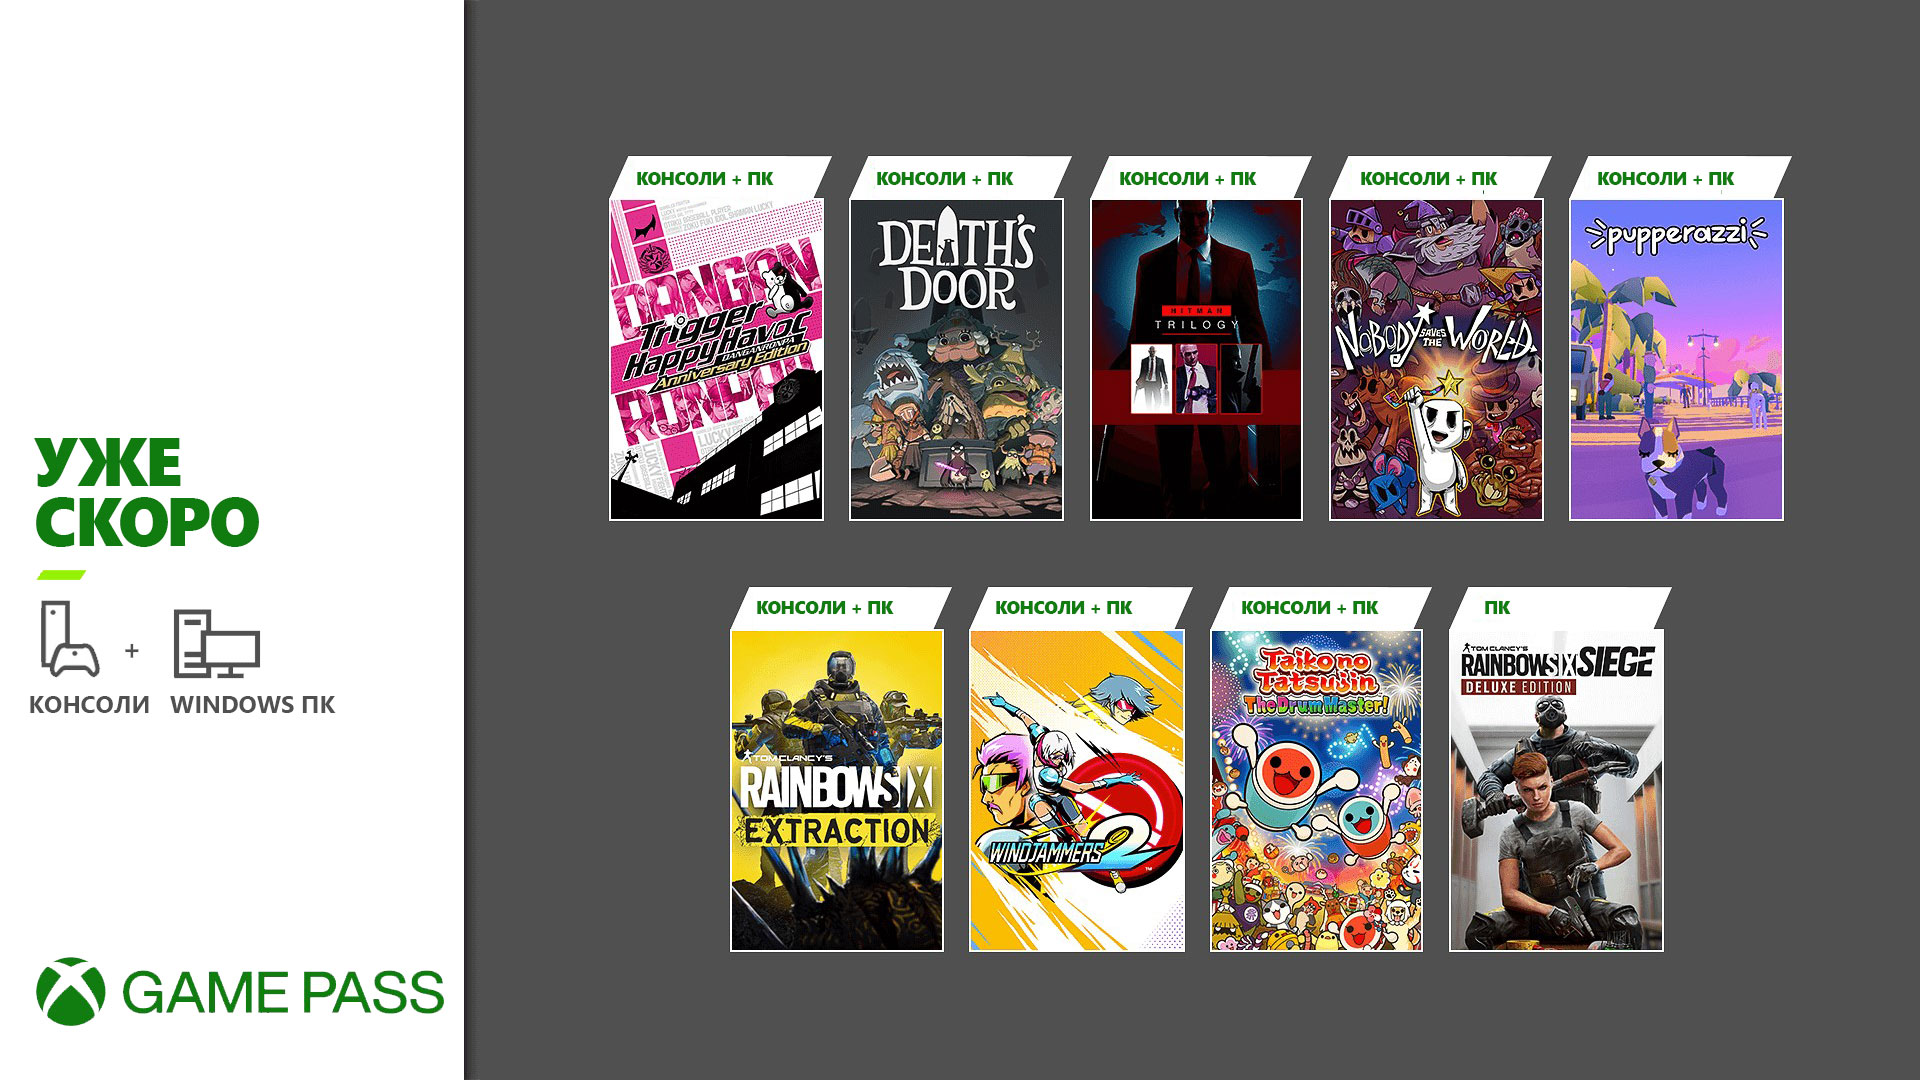 Обложки игр, которые появятся Скоро в Xbox Game Pass: Rainbow Six Extraction, Hitman Trilogy, Death’s Door и другие